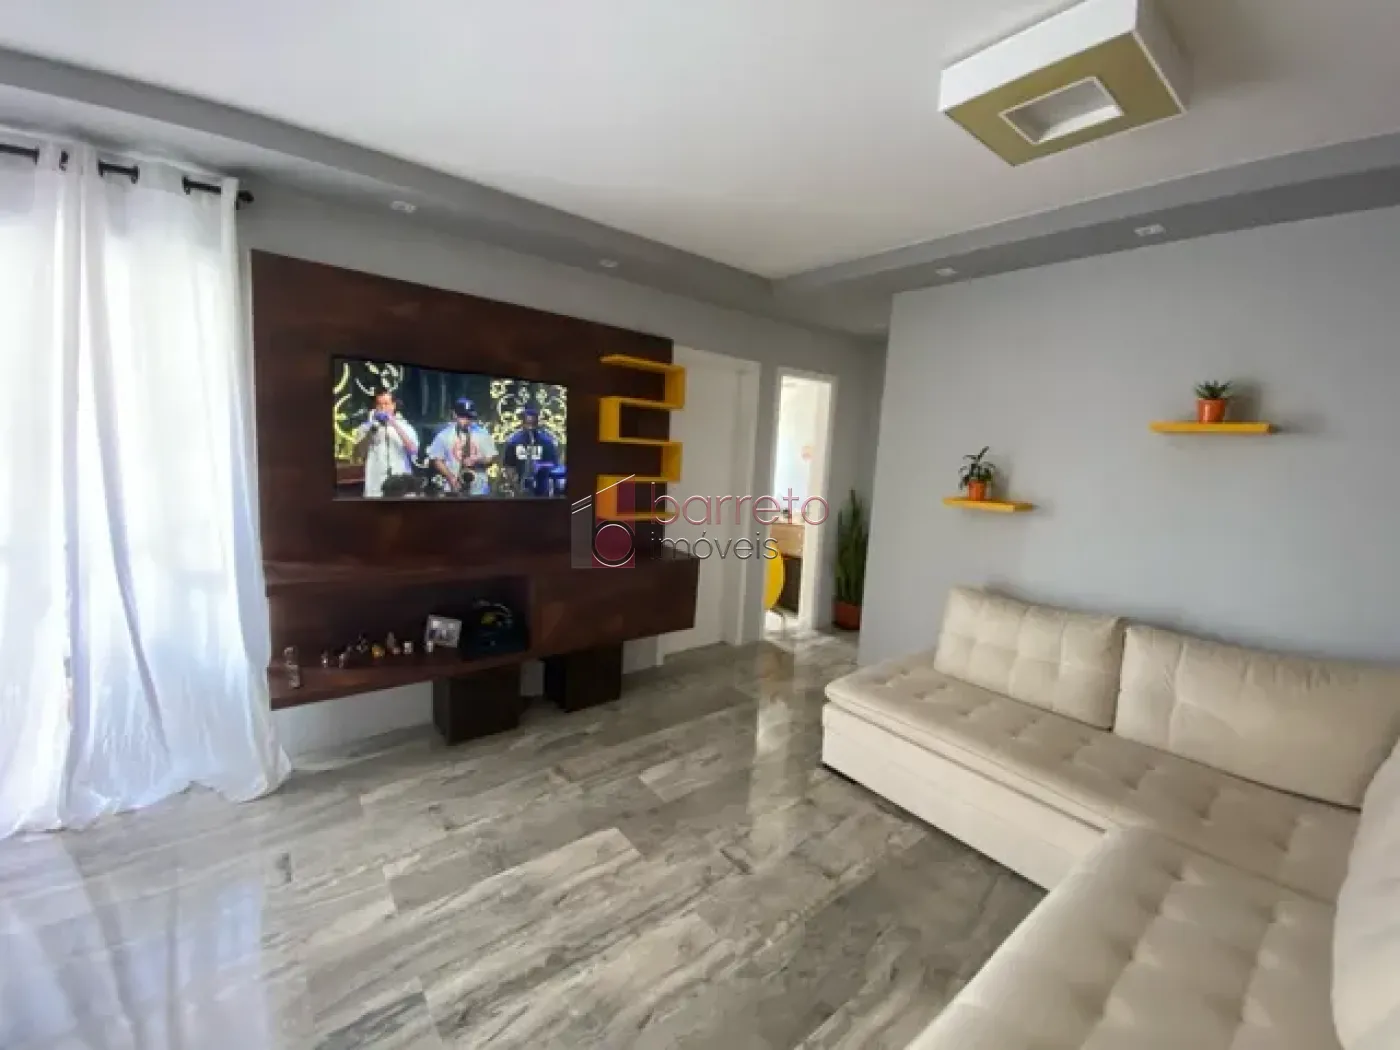 Comprar Apartamento / Padrão em Jundiaí R$ 405.000,00 - Foto 2